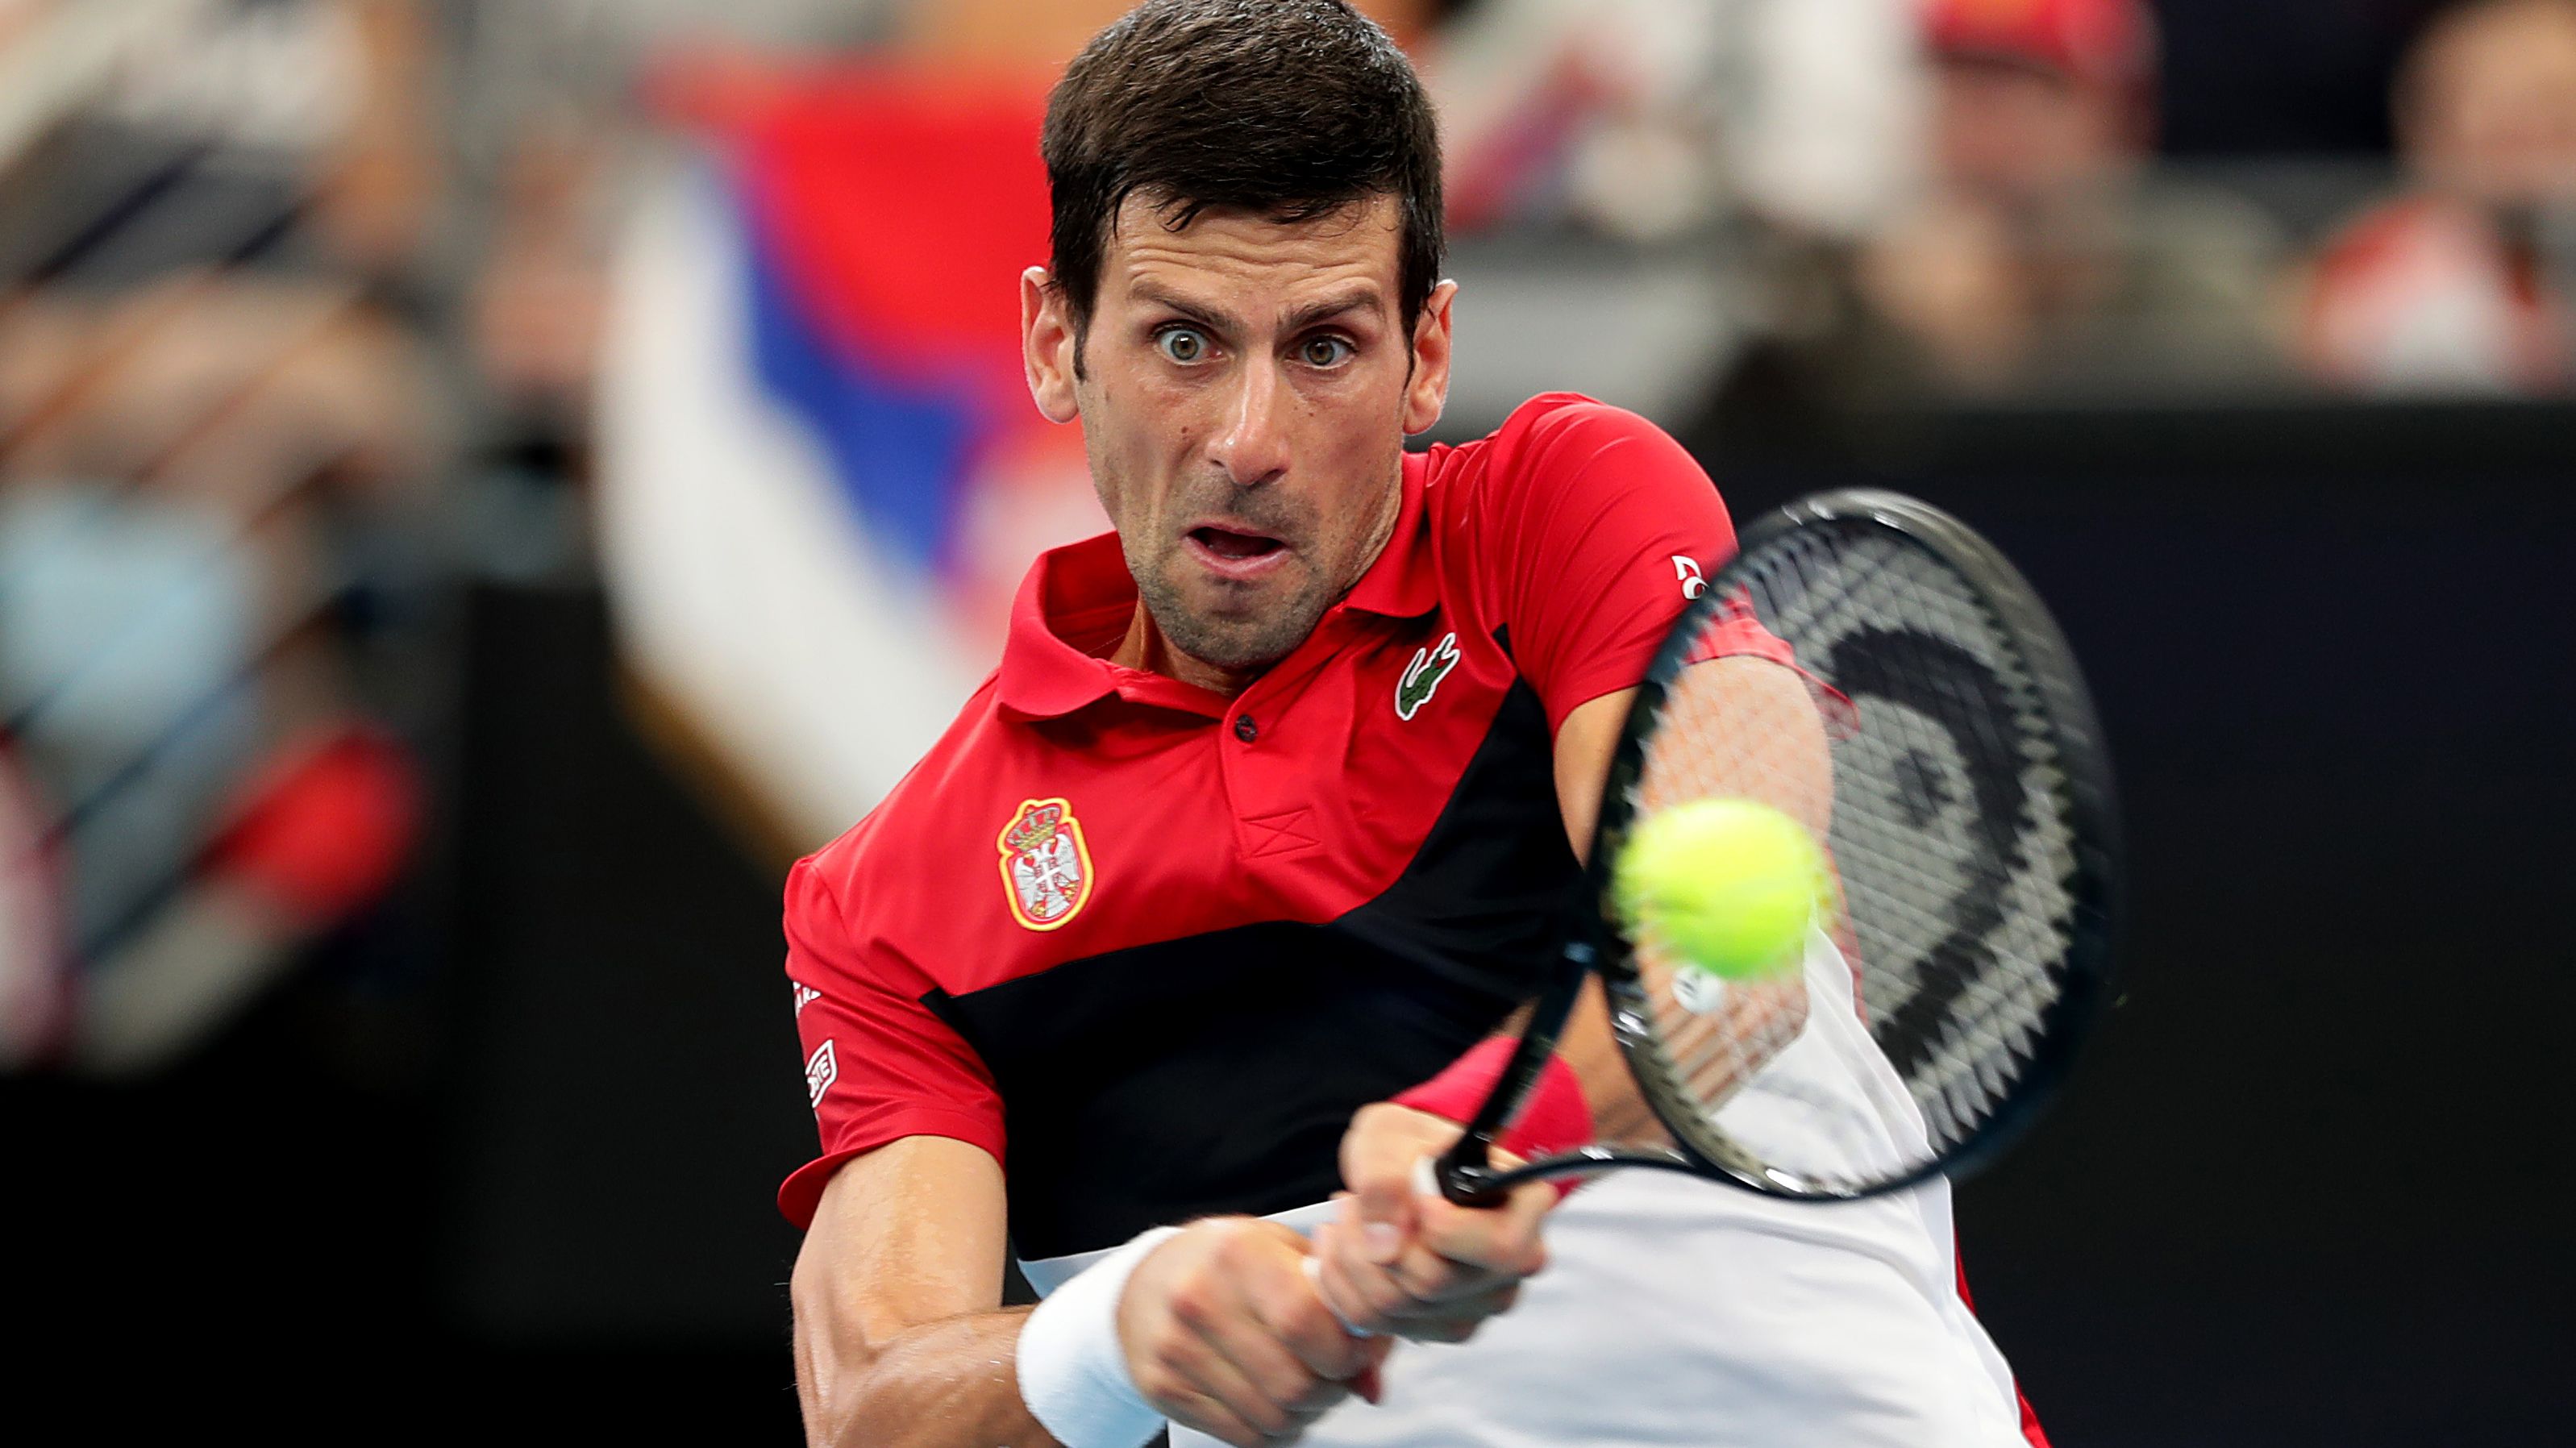 Novak Djokovic opposes compulsory coronavirus vaccination for tennis players